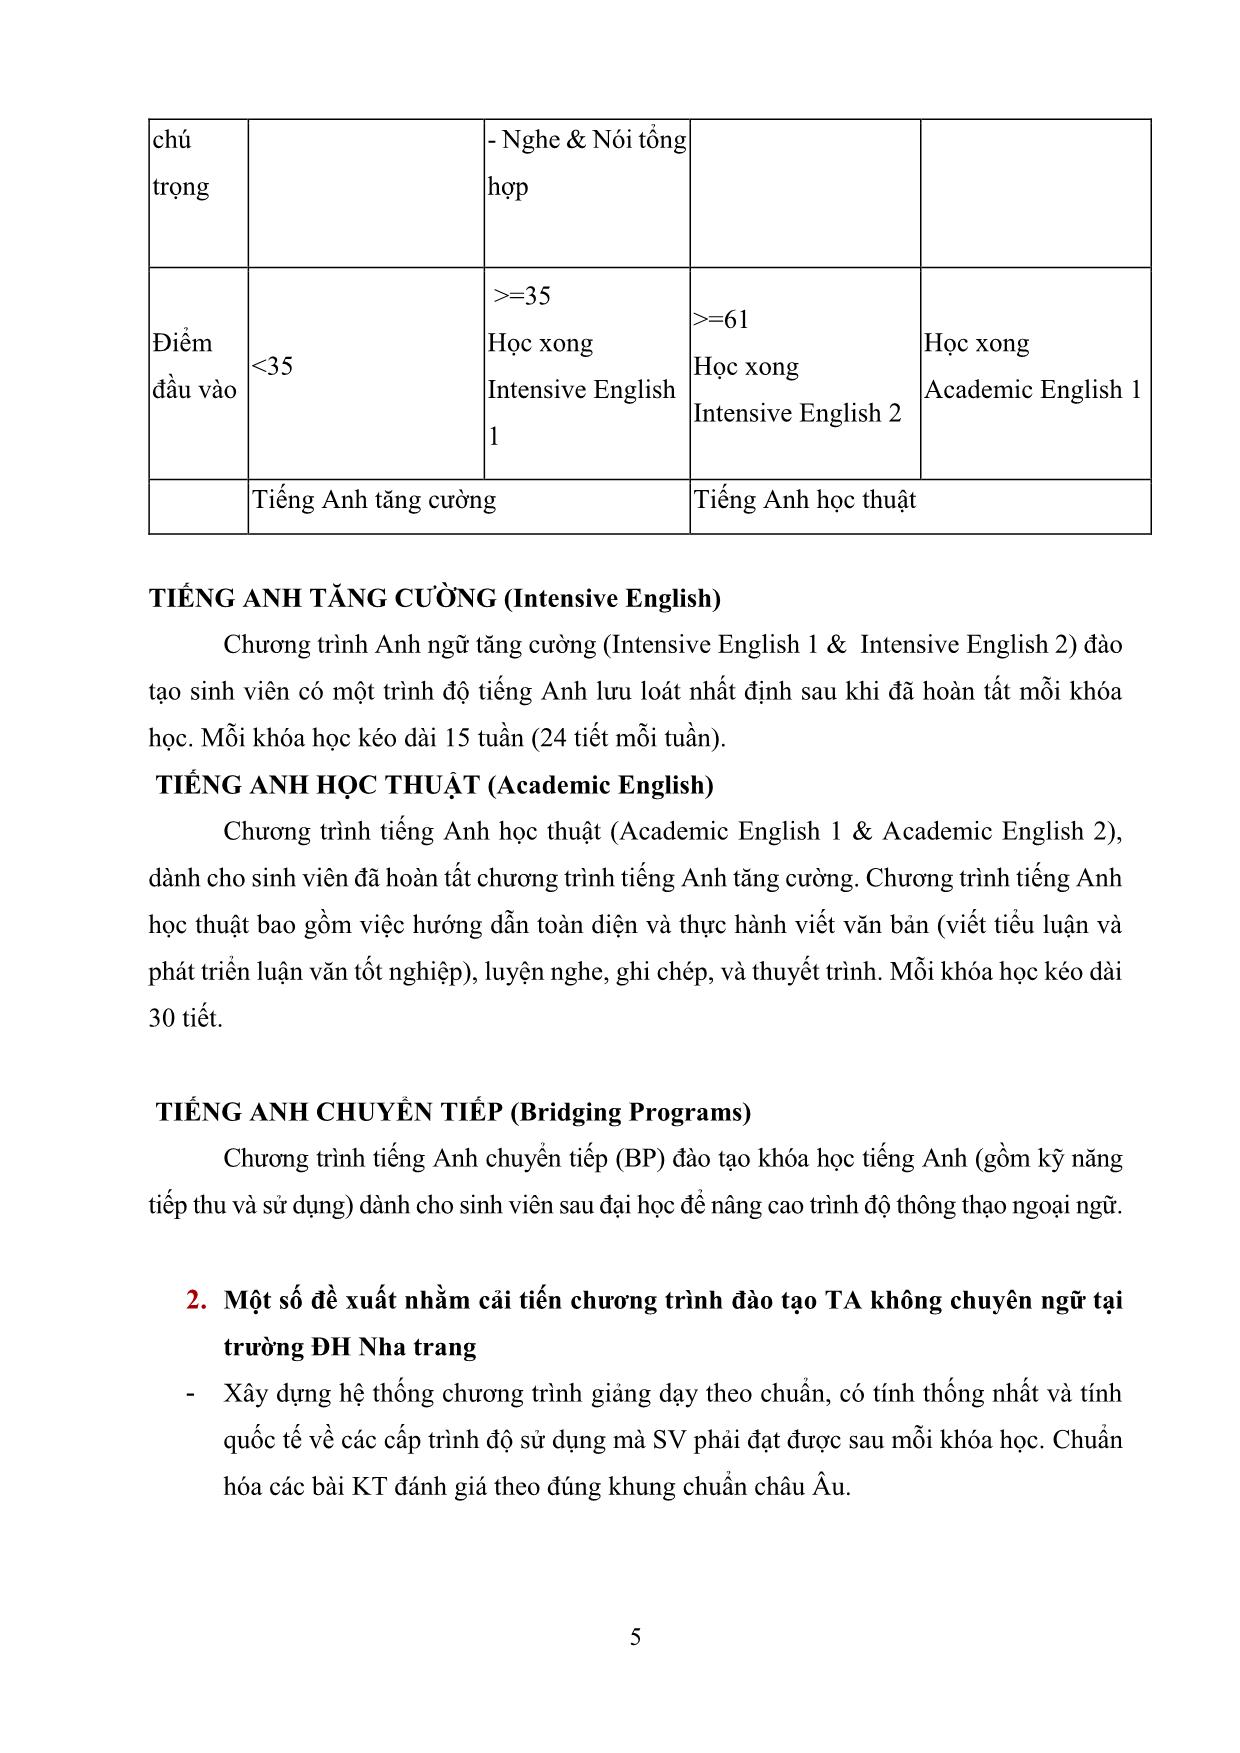 Tình hình dạy và học tiếng Anh không chuyên ngữ của các trường Đại học Việt Nam & giải pháp nâng cao năng lực tiếng Anh cho sinh viên không chuyên ngữ trường Đại học Nha Trang trang 5